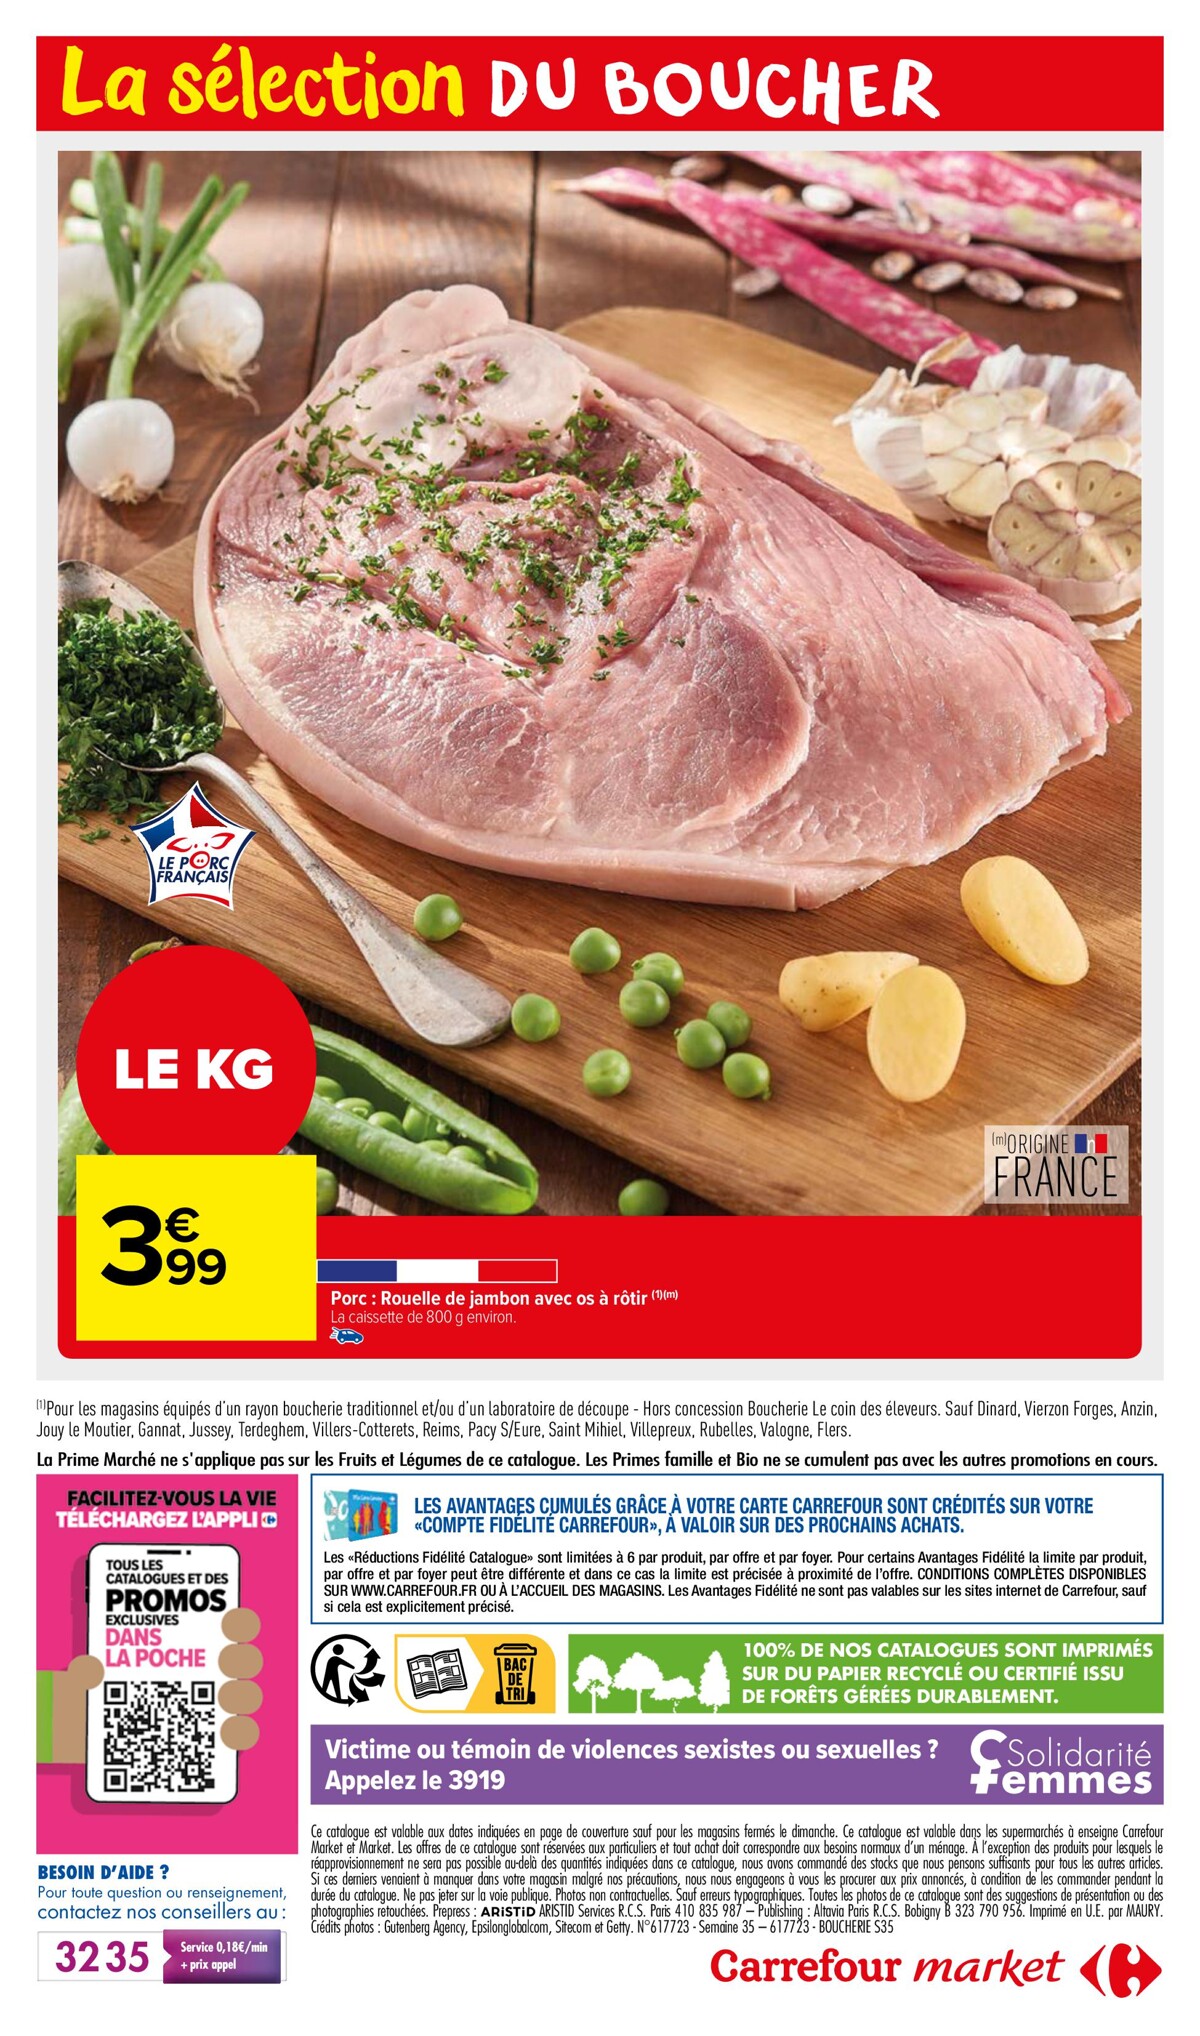 Catalogue La selection du boucher, page 00012